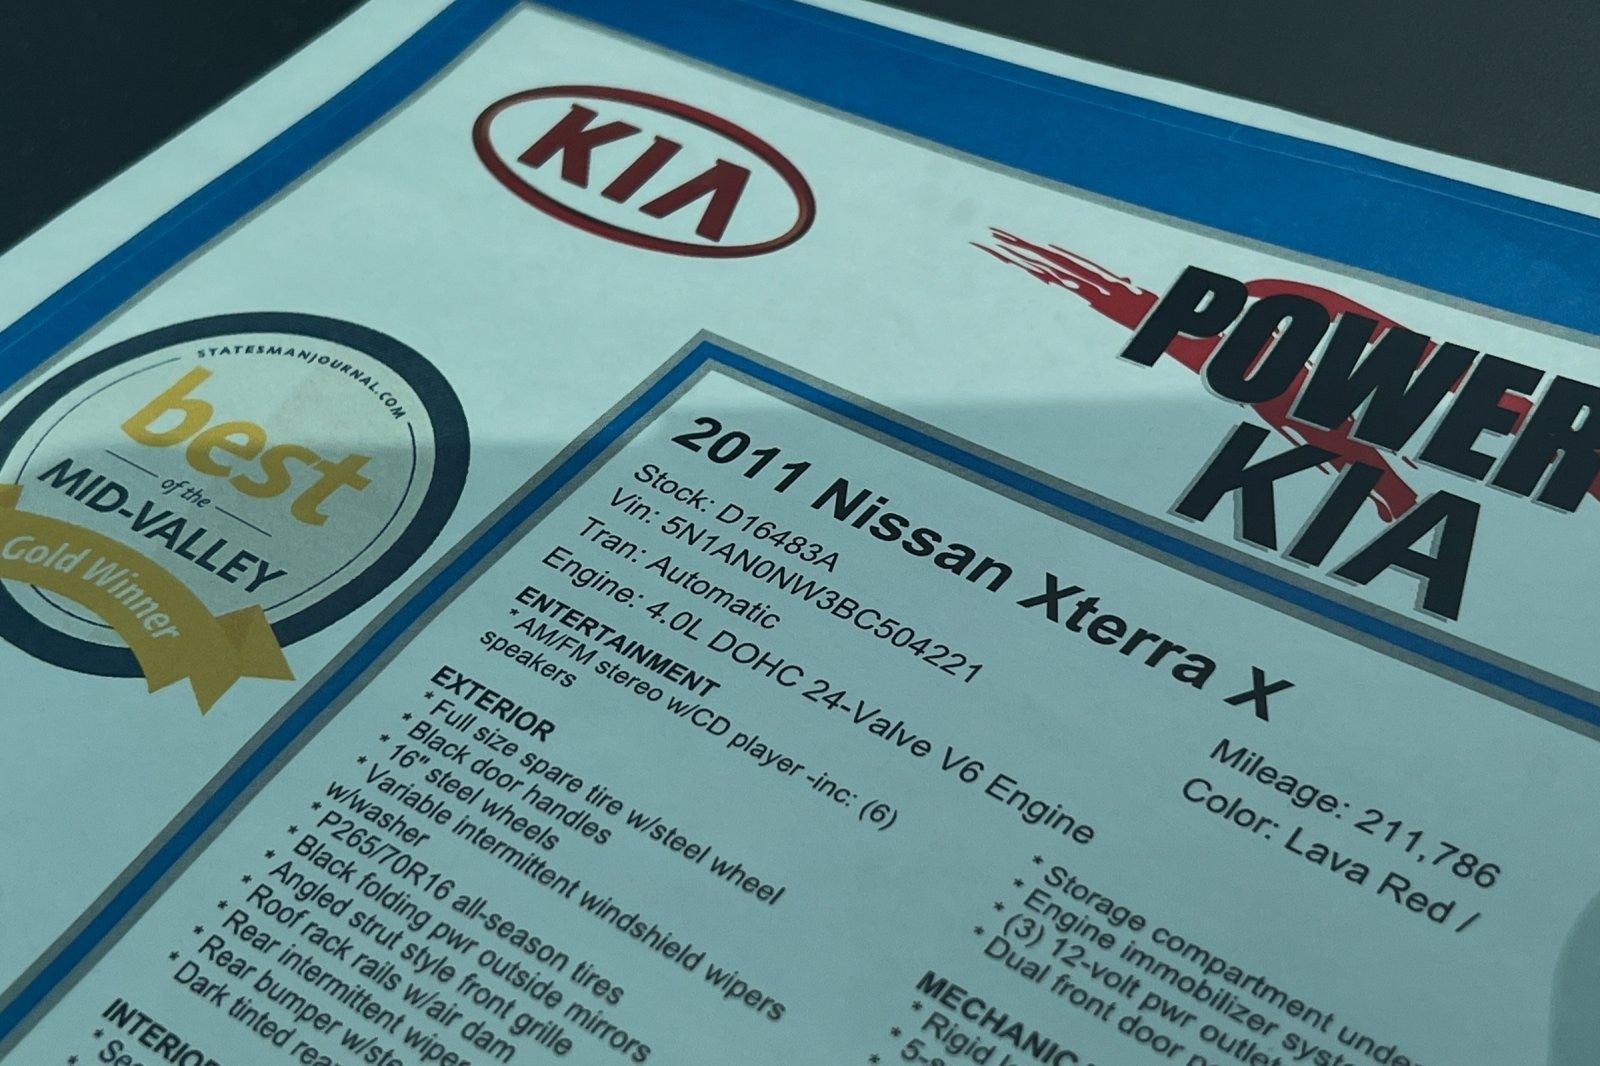 2011 Nissan Xterra X